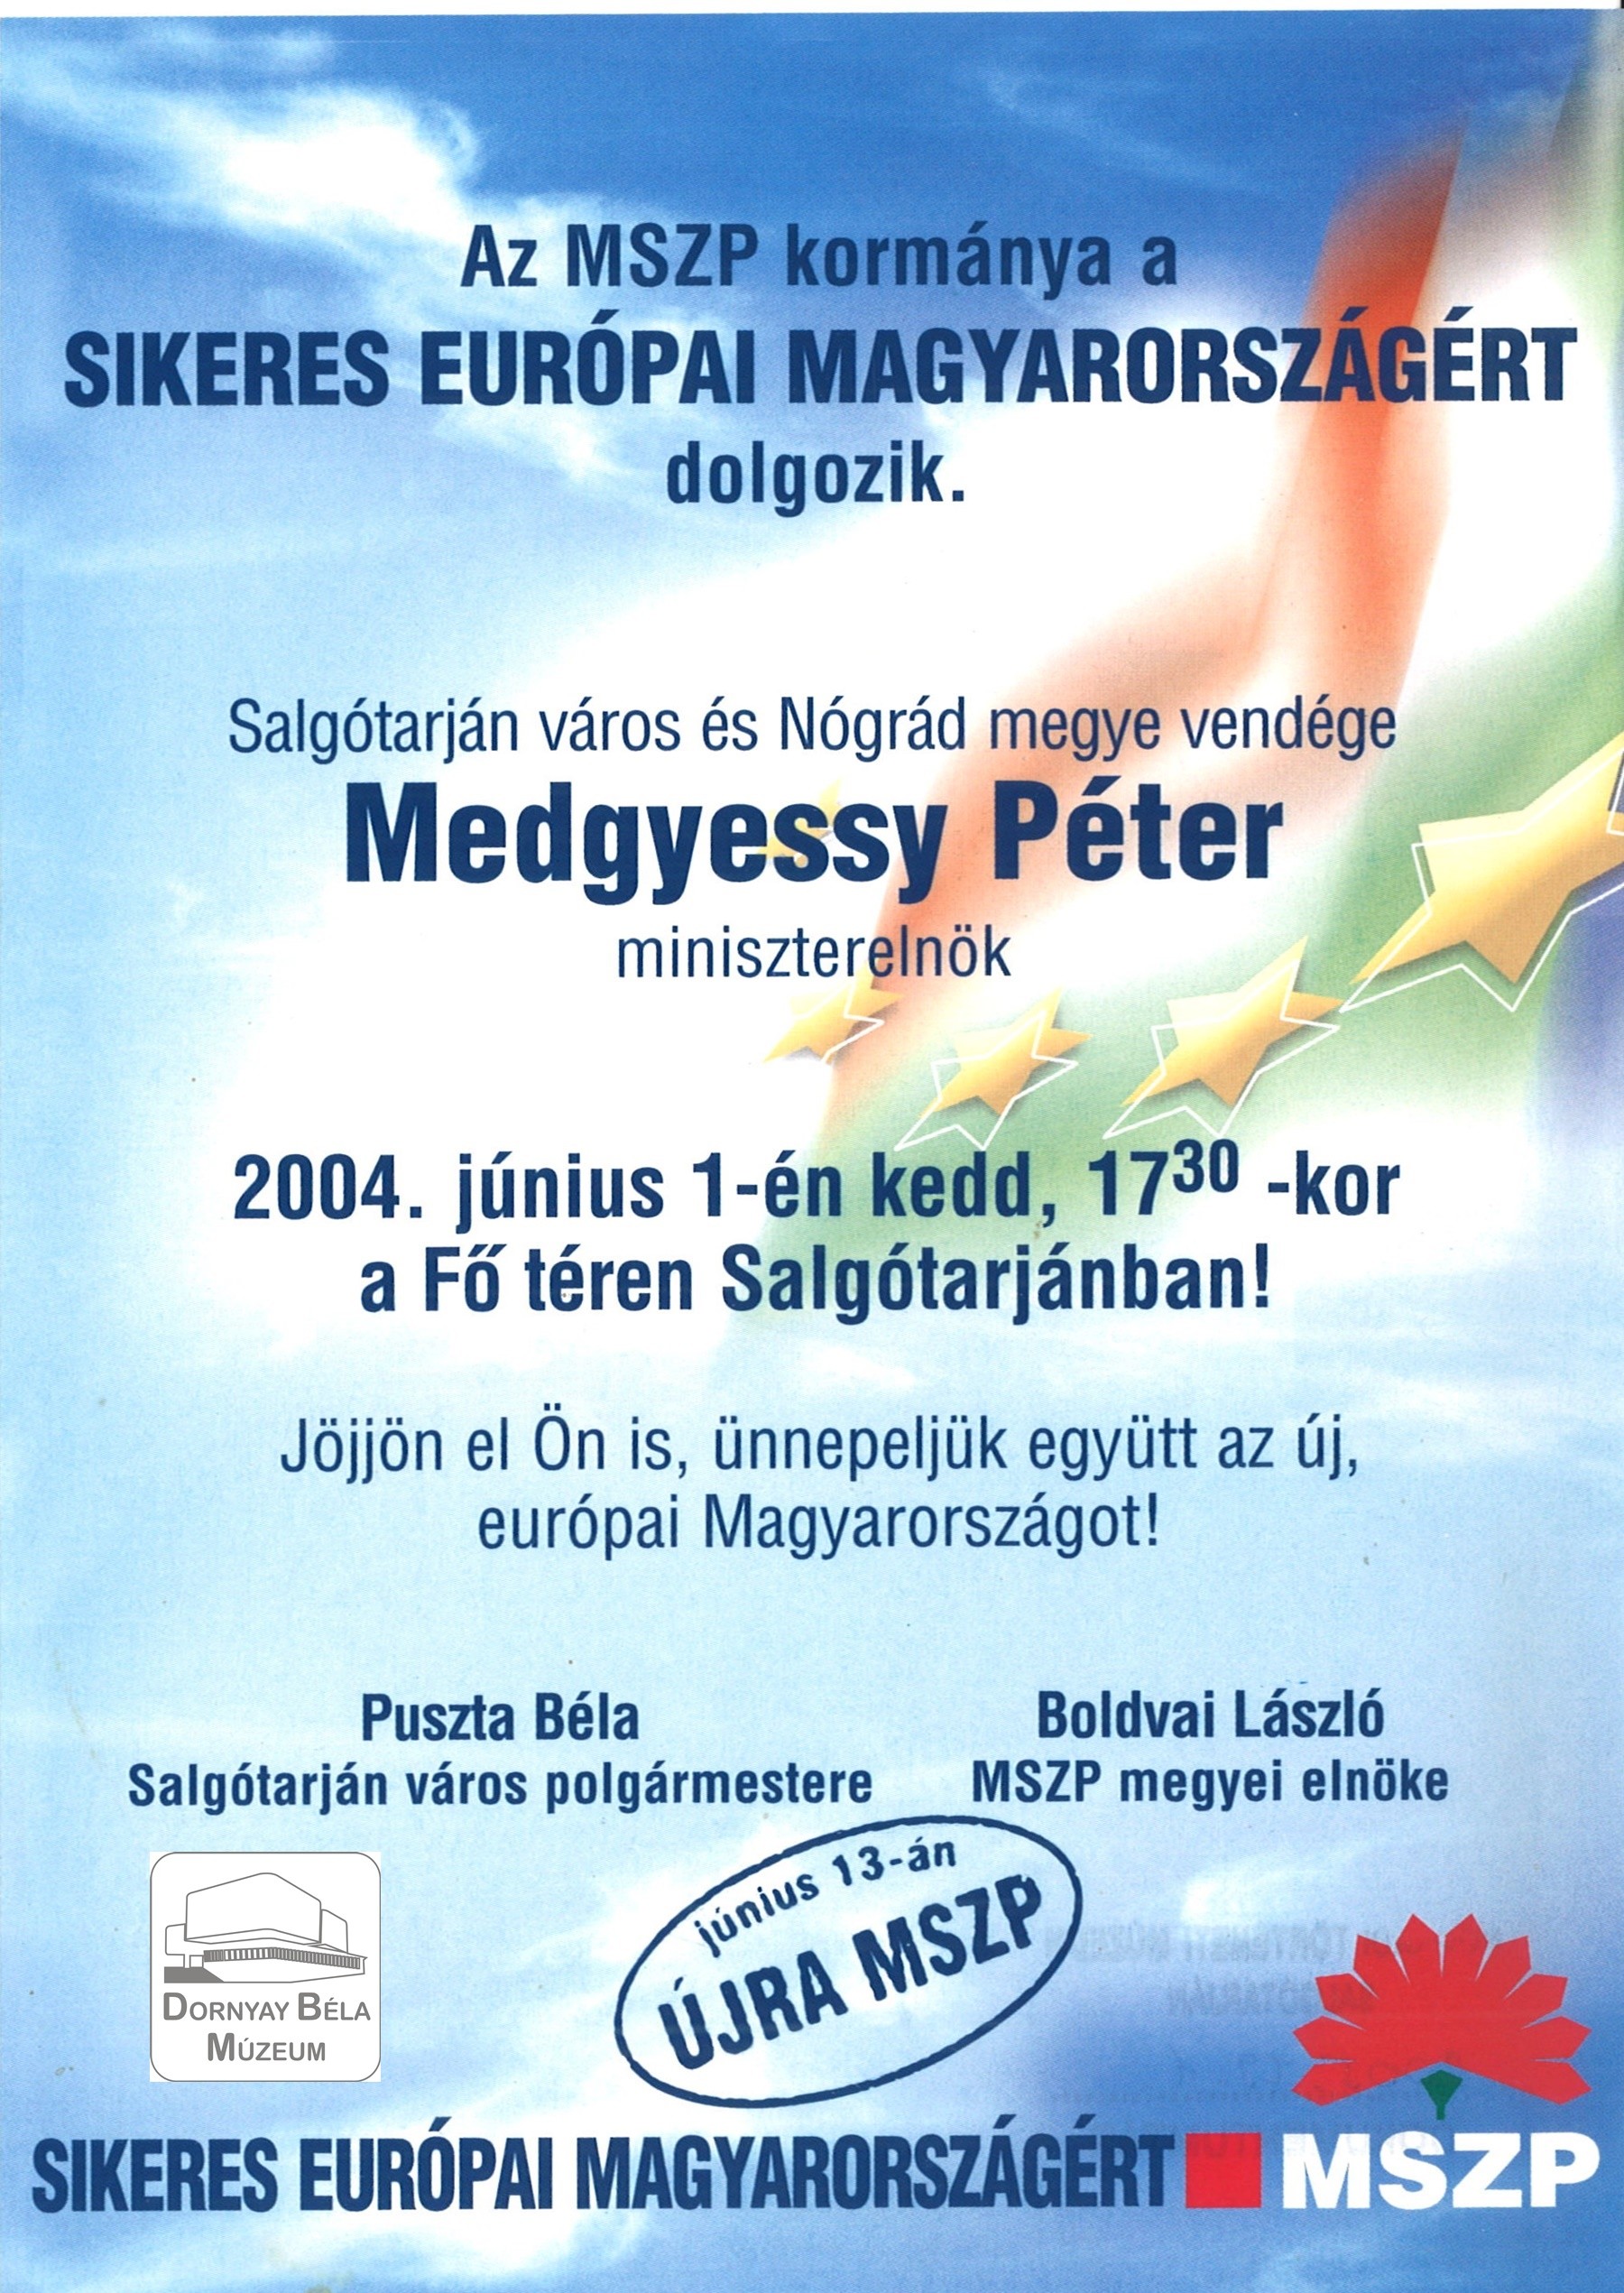 Salgótarján és Nógrád megye vendége Medgyessy Péter, 2004. jún.1. június 13-án újra MSZP (Dornyay Béla Múzeum, Salgótarján CC BY-NC-SA)